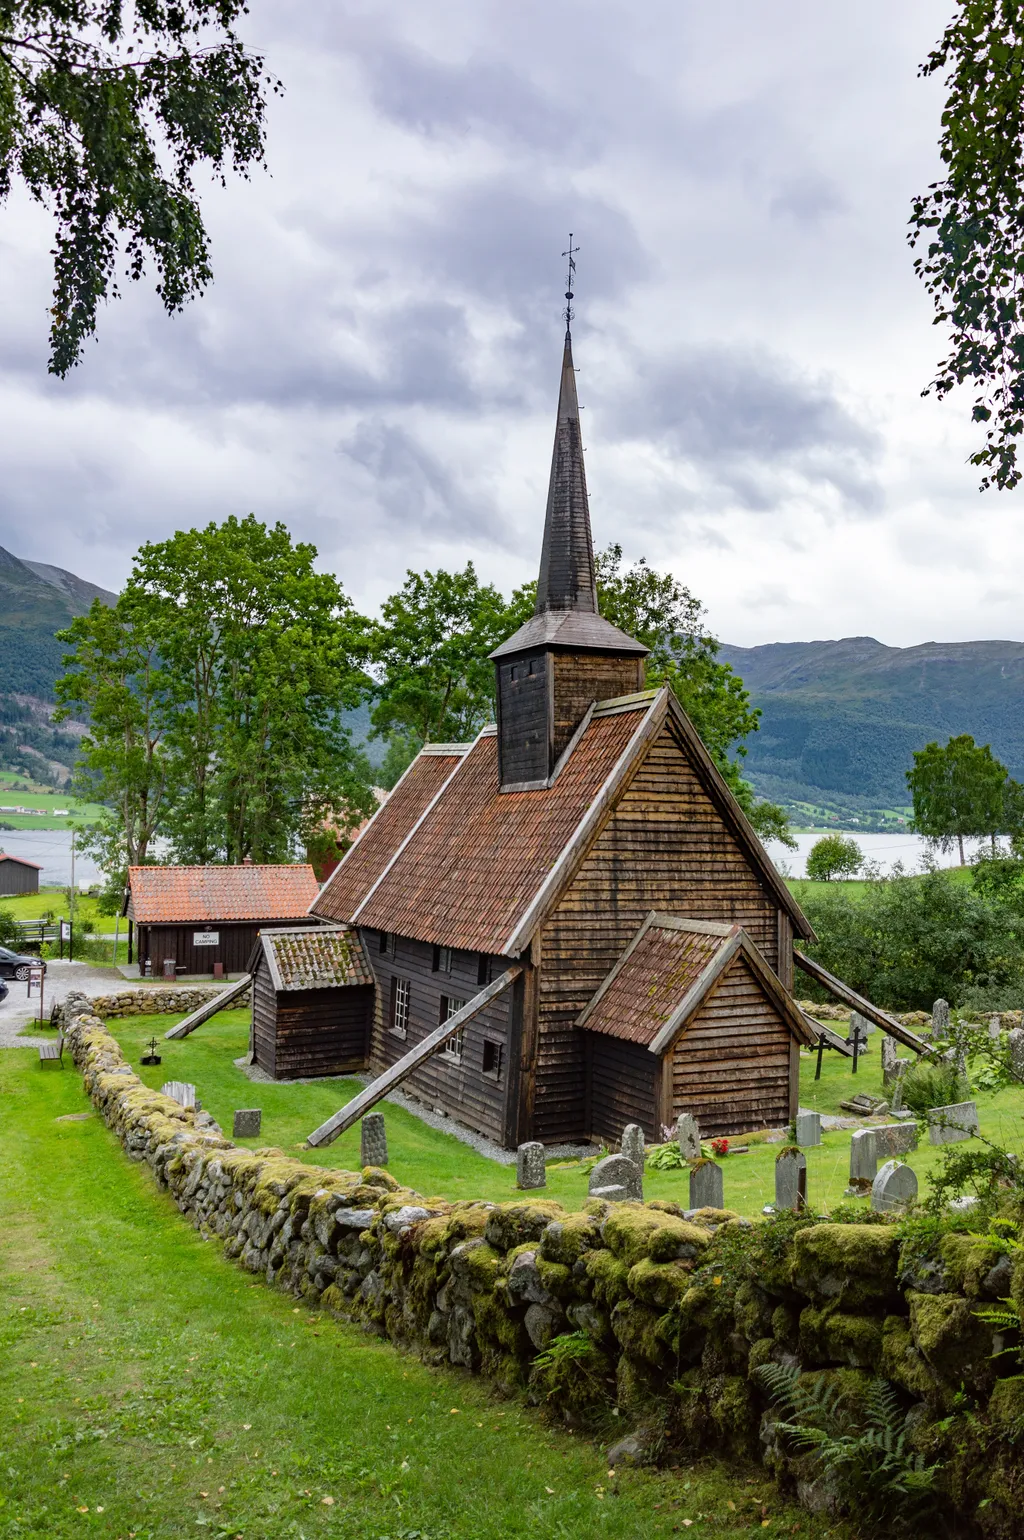 Norvégia egyedi fa templomai a vikingek korát idézi, templom, viking templom, viking, épület, építészet, vallás, Norvégia, norvég, Rřdven, Rødven 